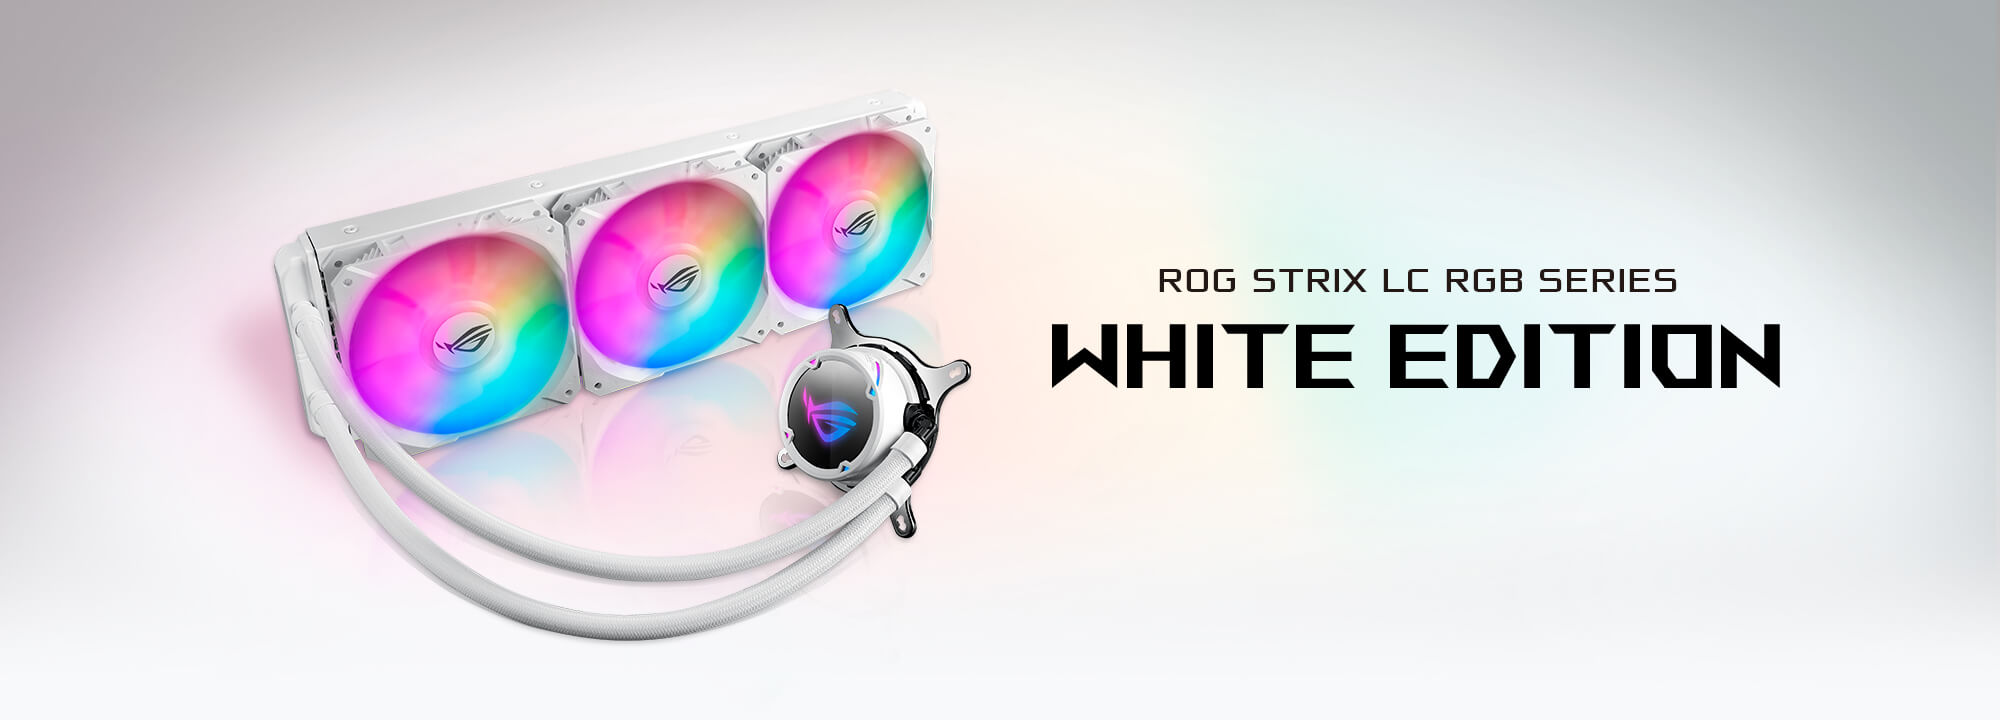 ROG Strix LC 360 RGB White Edition